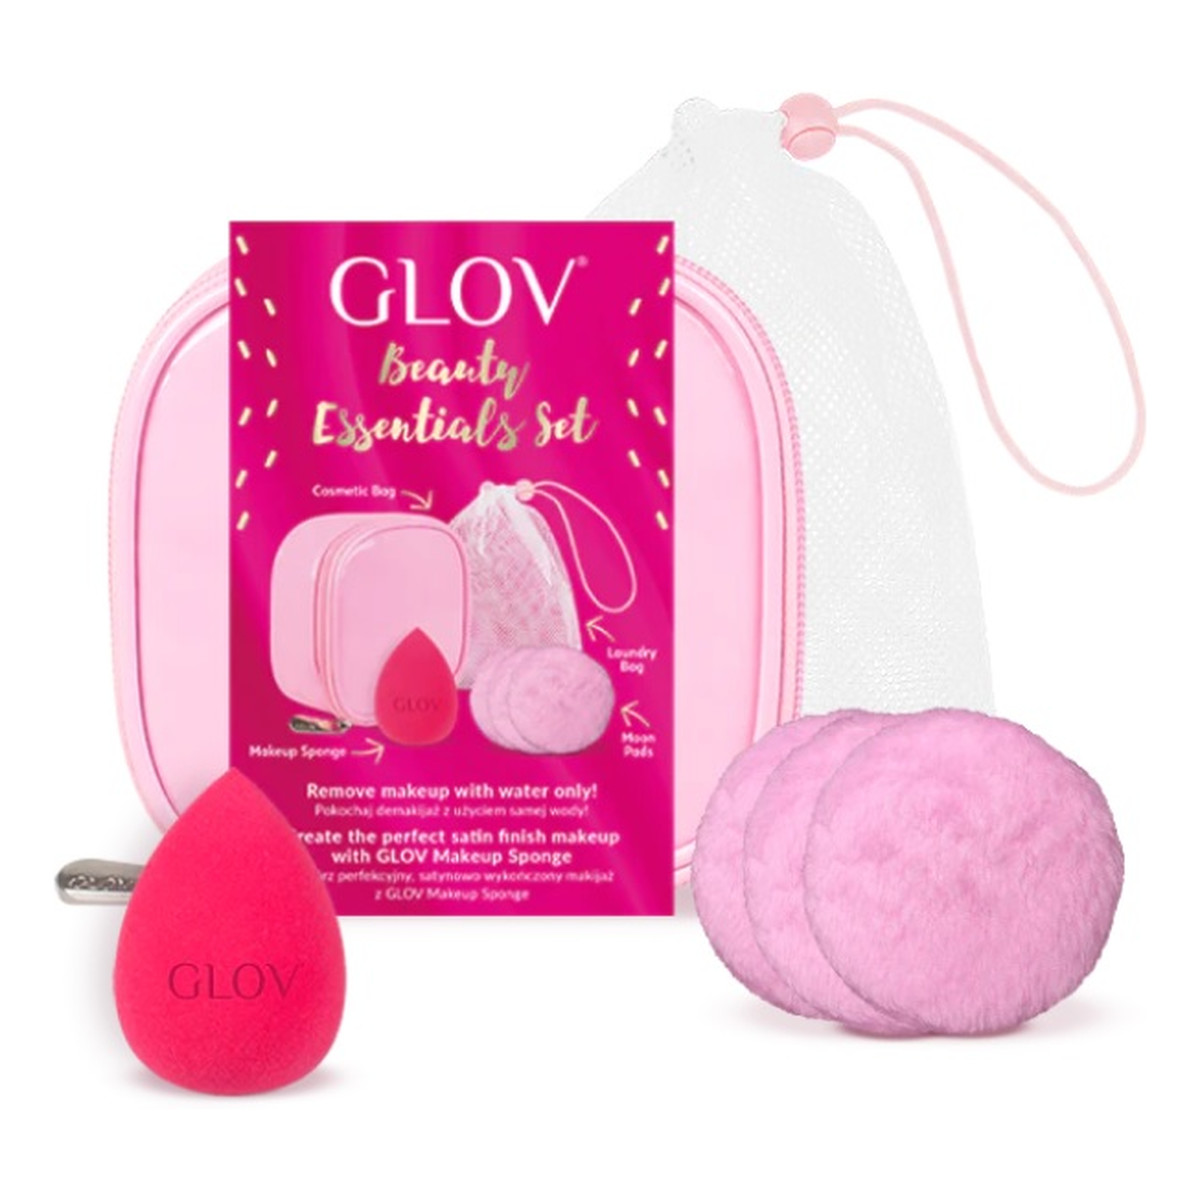 Glov Beauty Essentials Zestaw make up sponge gąbeczka do makijażu + mood pads & laundry bag waciki do twarzy z woreczkiem + kosmetyczka